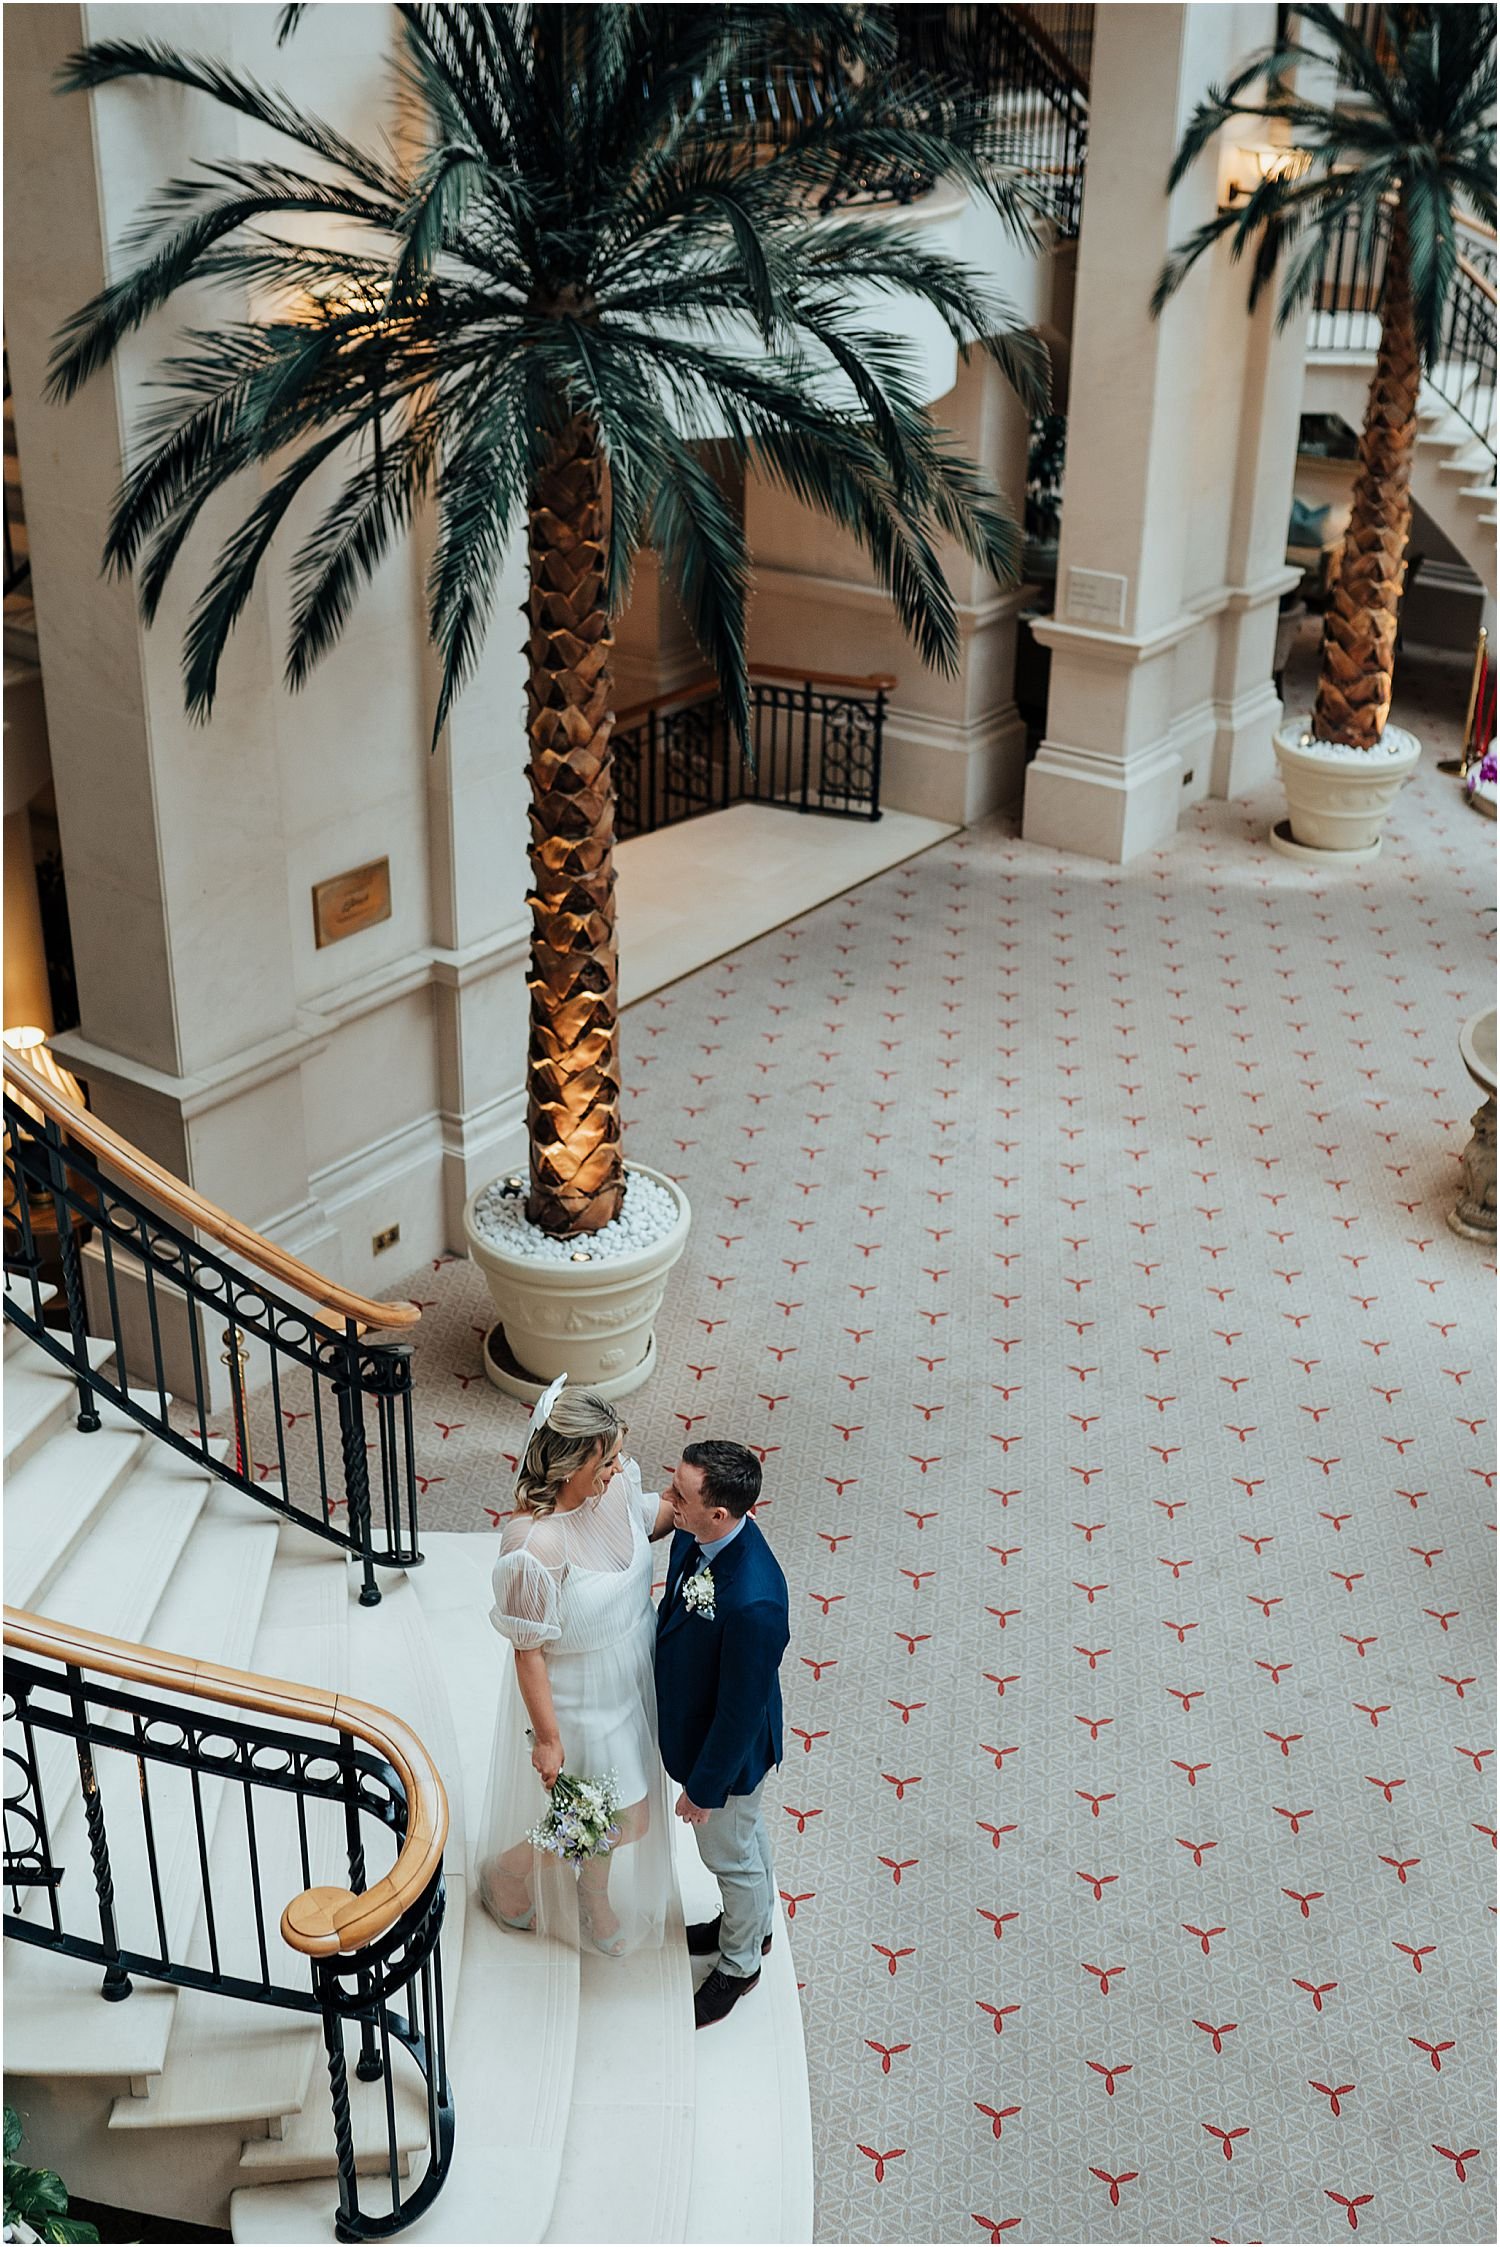 Bride and groom on stairs in Landmark Hotel London